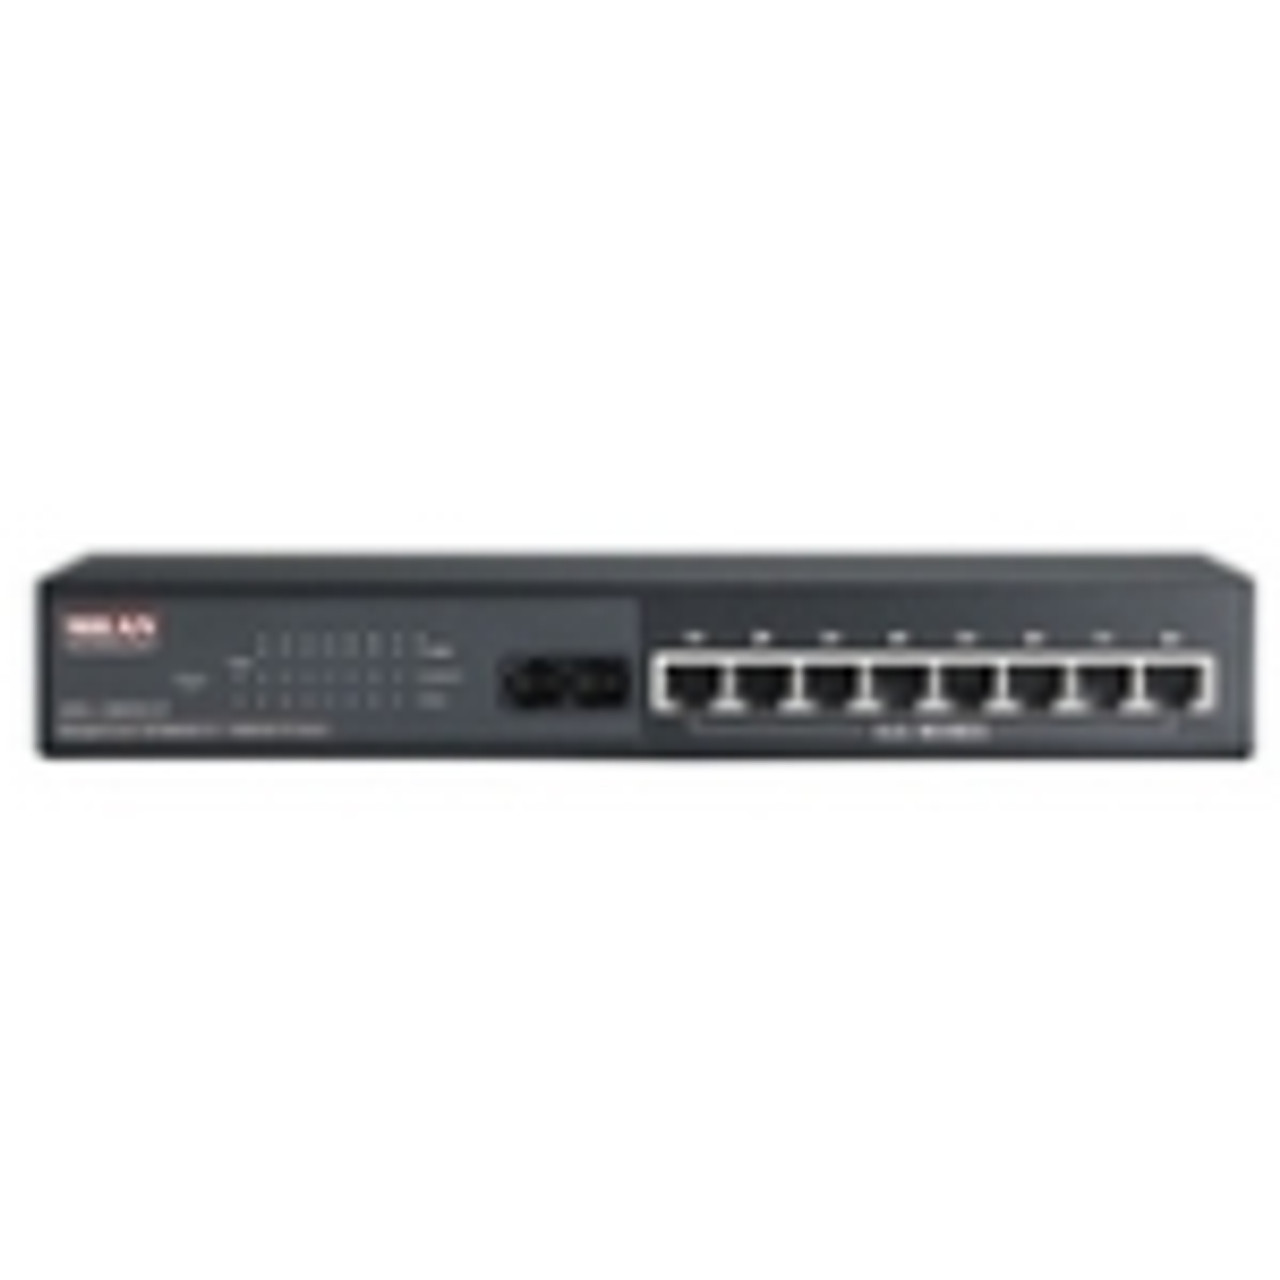 MIL-SM801PSCEU Milan MIL-SM801P Ethernet Switch 8 x 10/100Base-TX, 1 x 100Base-FX (Refurbished)